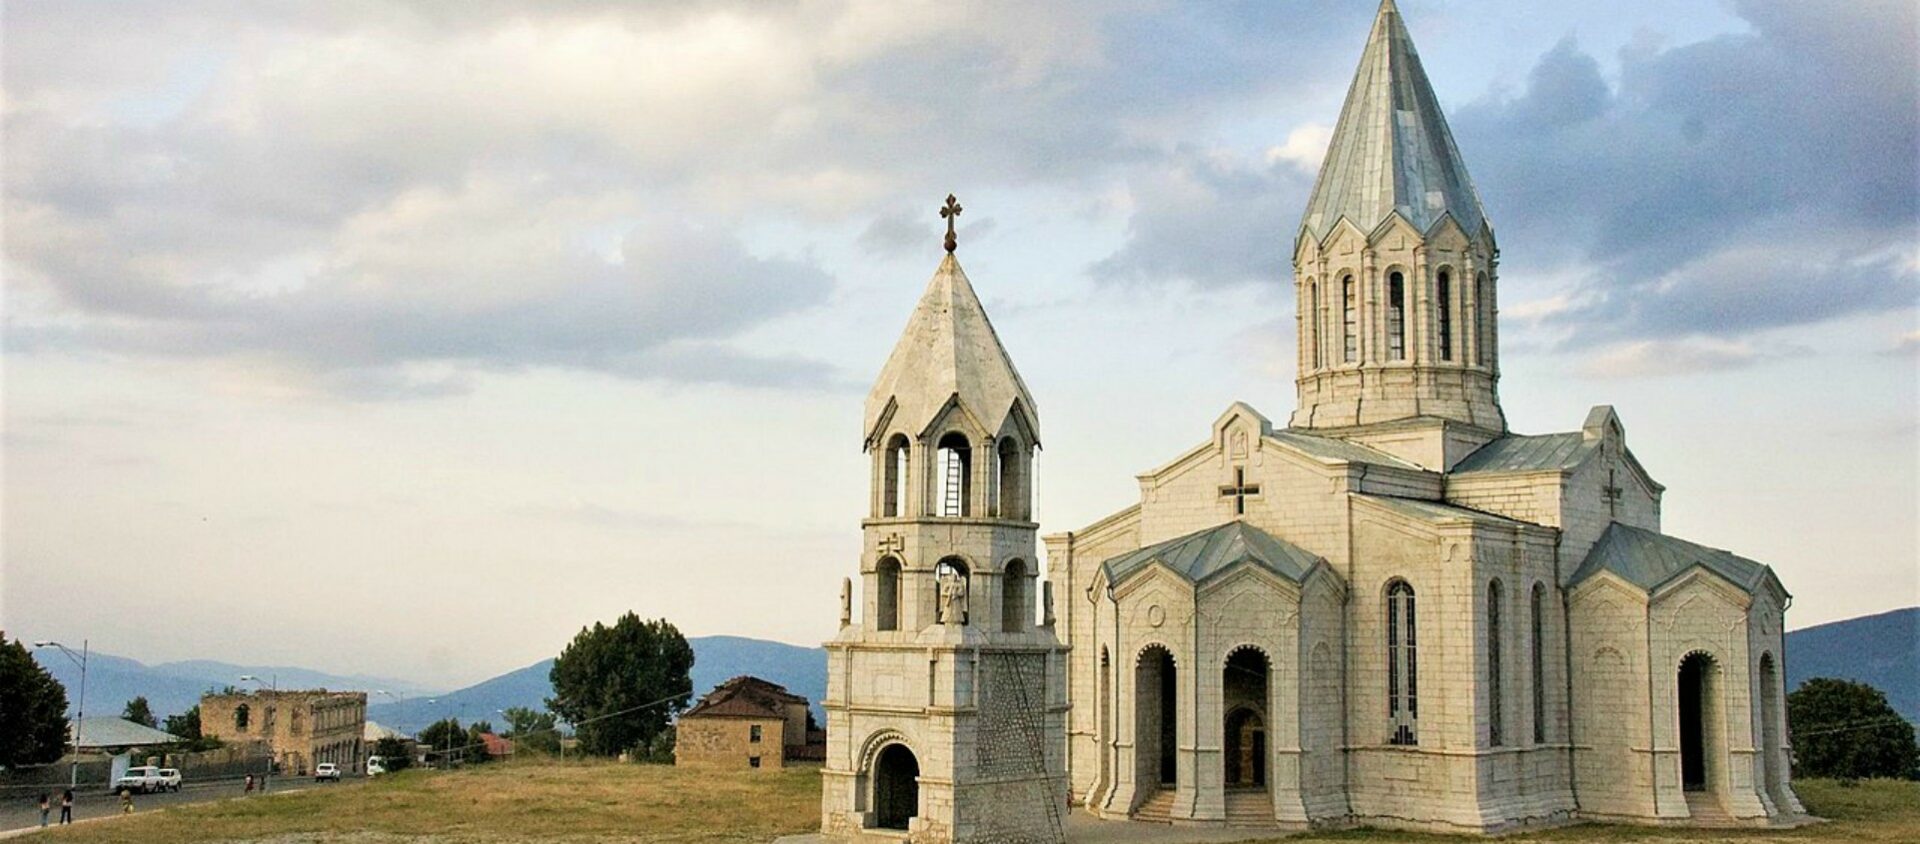 Cathédrale Saint-Sauveur – Ghazanchetsots en arménien - une des plus grandes églises du monde arménien | CC BY-SA 2.0 Vladimer Shioshvili, wikipedia